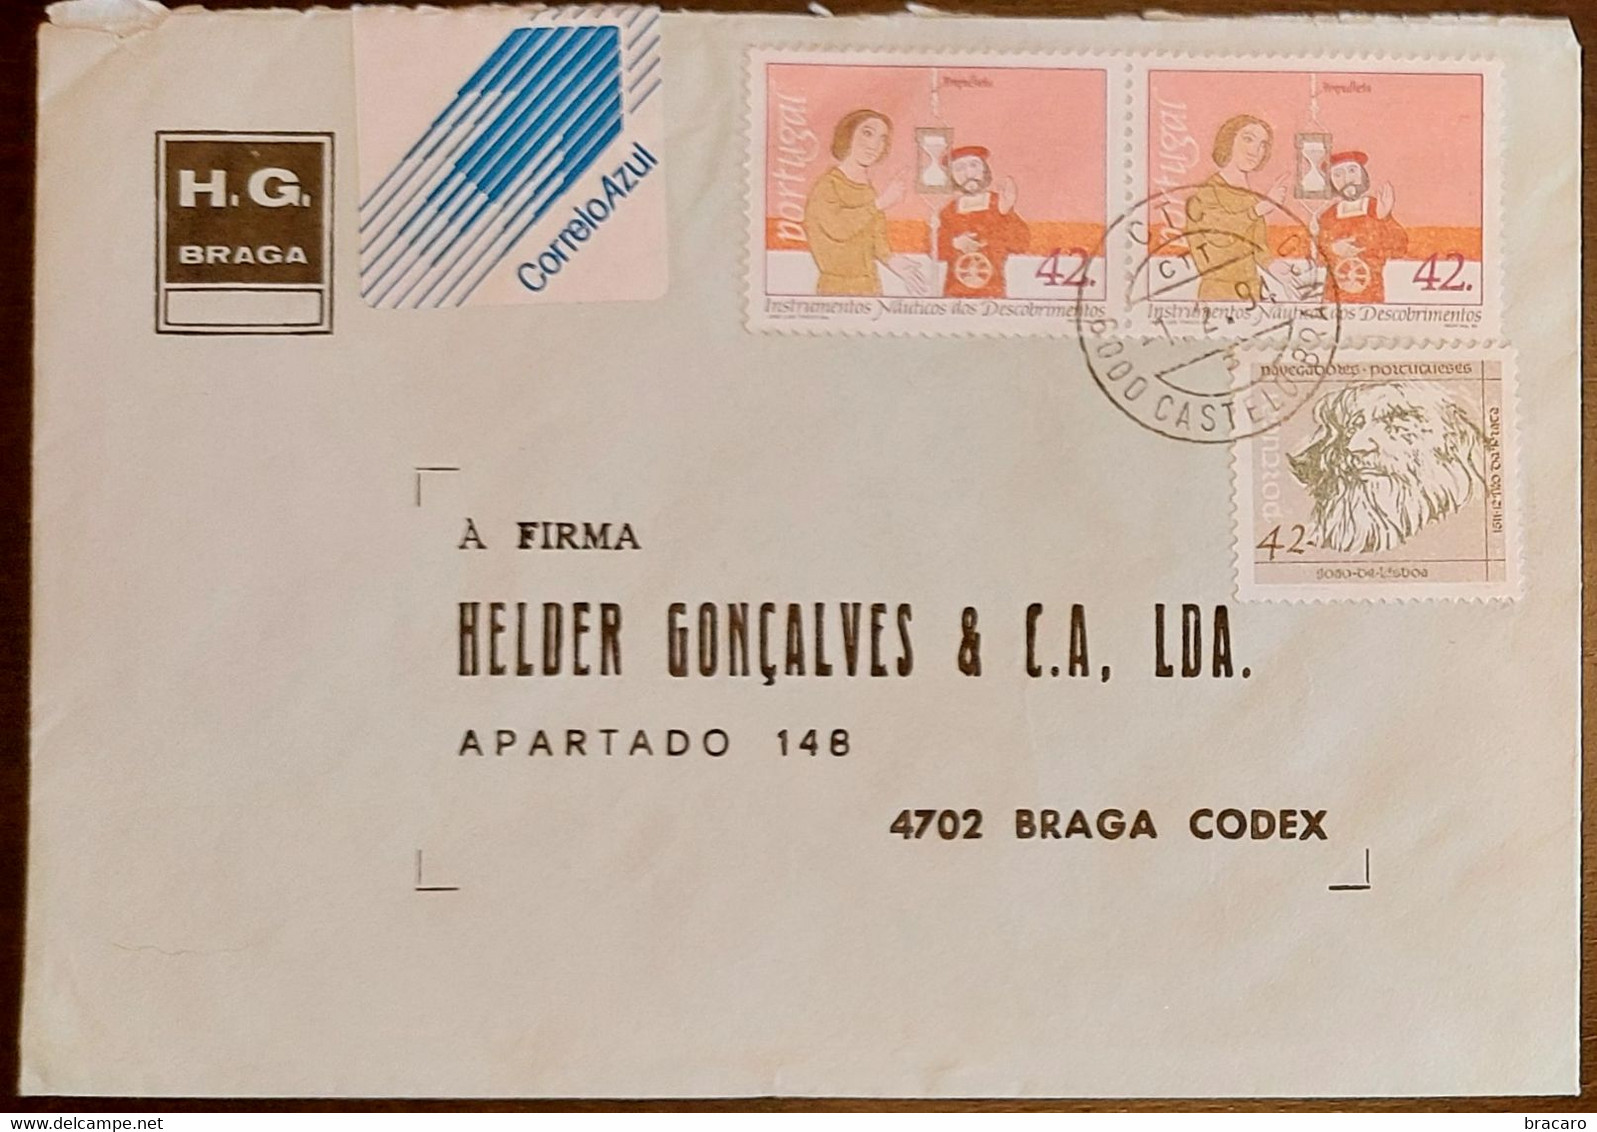 PORTUGAL - Cover 1.2.1994 - Cancel Castelo Branco - Stamps Instrumentos Náuticos + Navegadores 42$00 - H.G. Braga - Storia Postale